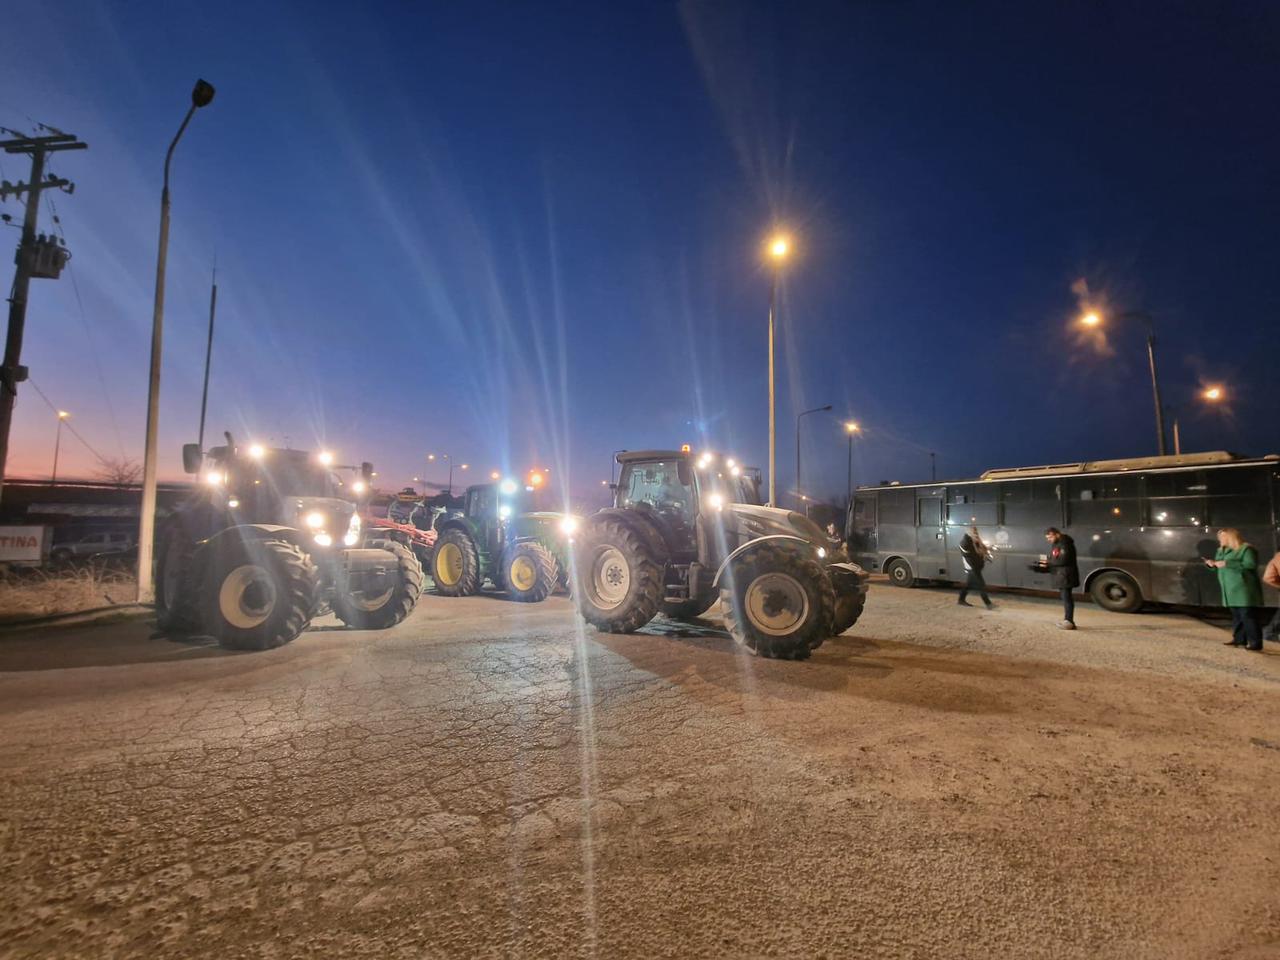 Οι αγρότες άναψαν πυρσούς και απέκλεισαν το ρεύμα της εθνικής οδού προς Θεσσαλονίκη στα Μάλγαρα